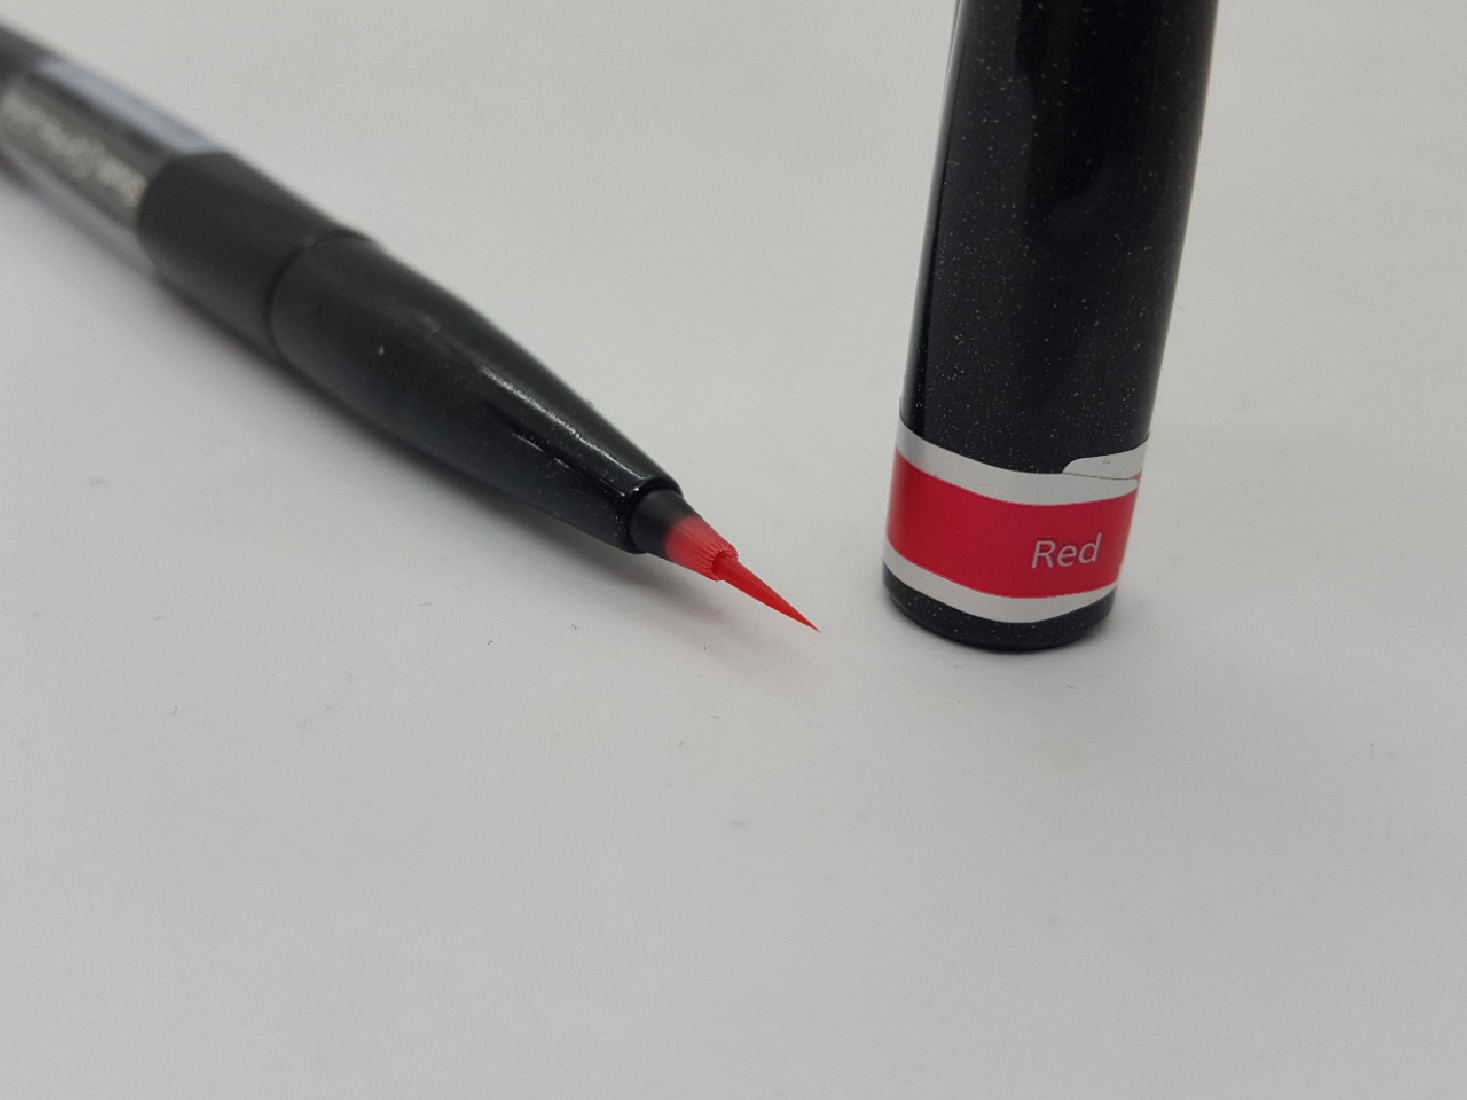 Pentel Artist Brush Sign Pen ultra fine- Red